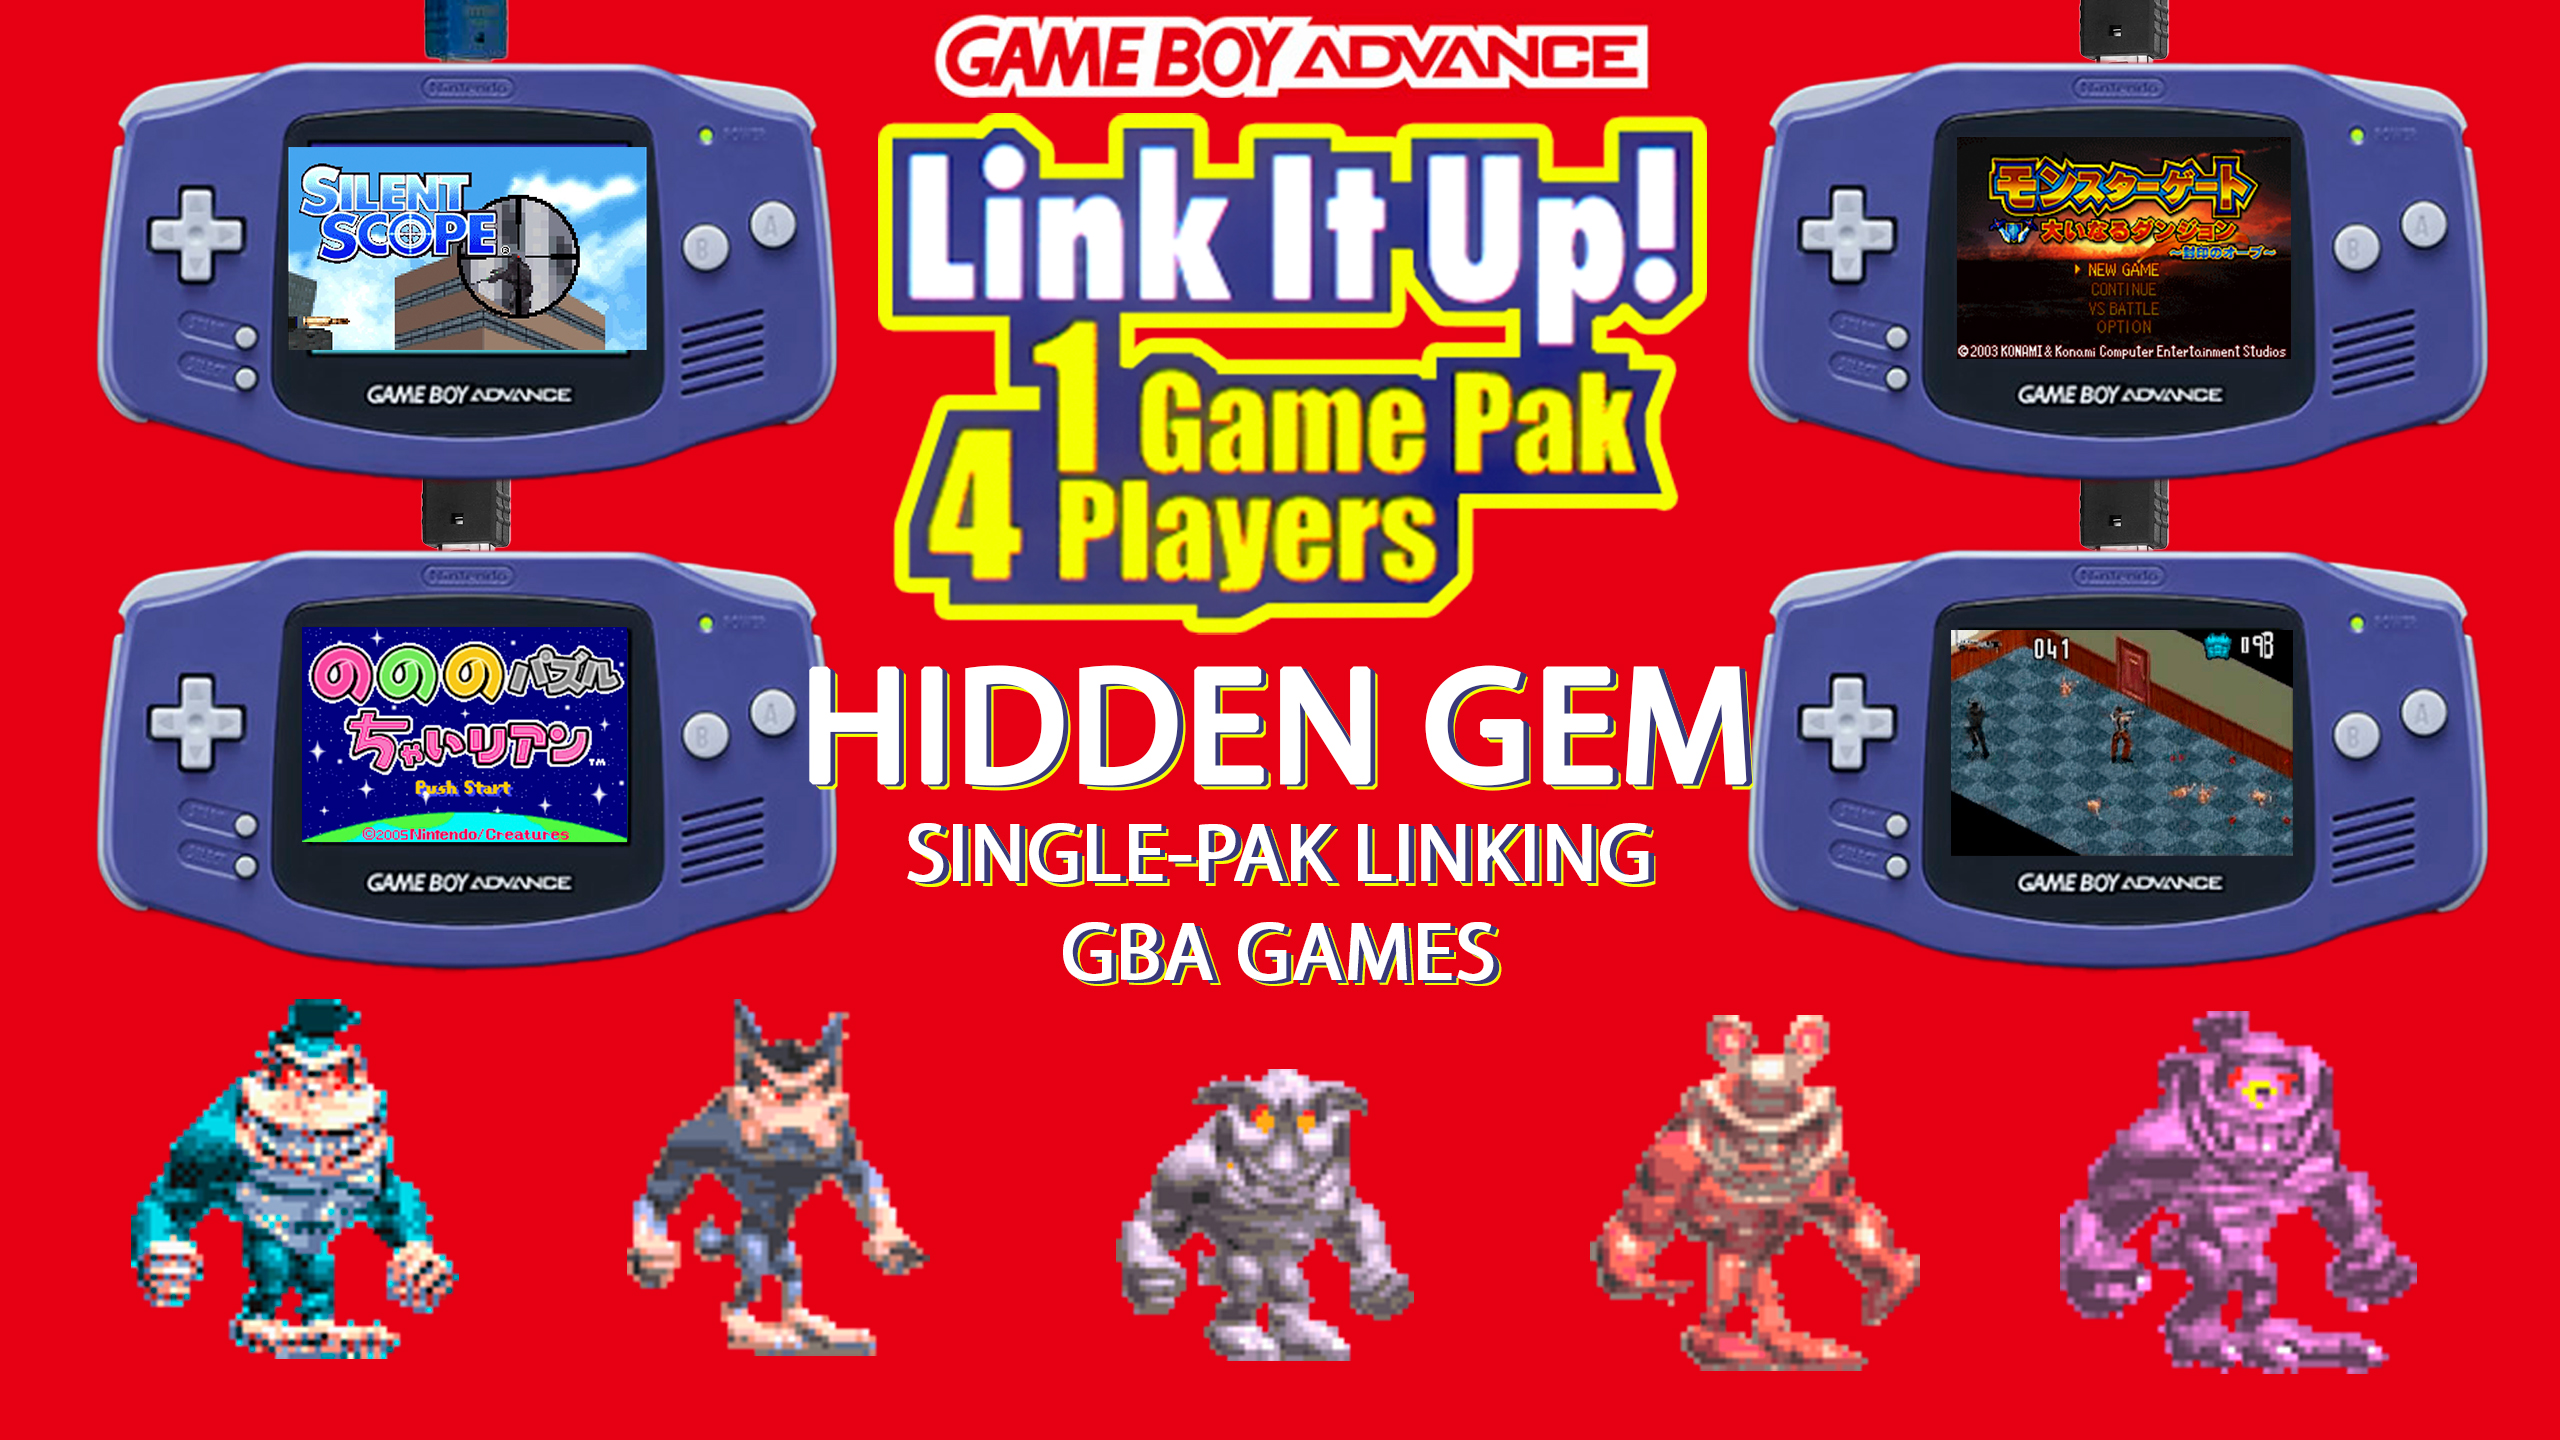 10 HIDDEN GEM Gameboy Advance Single-Pak linking games